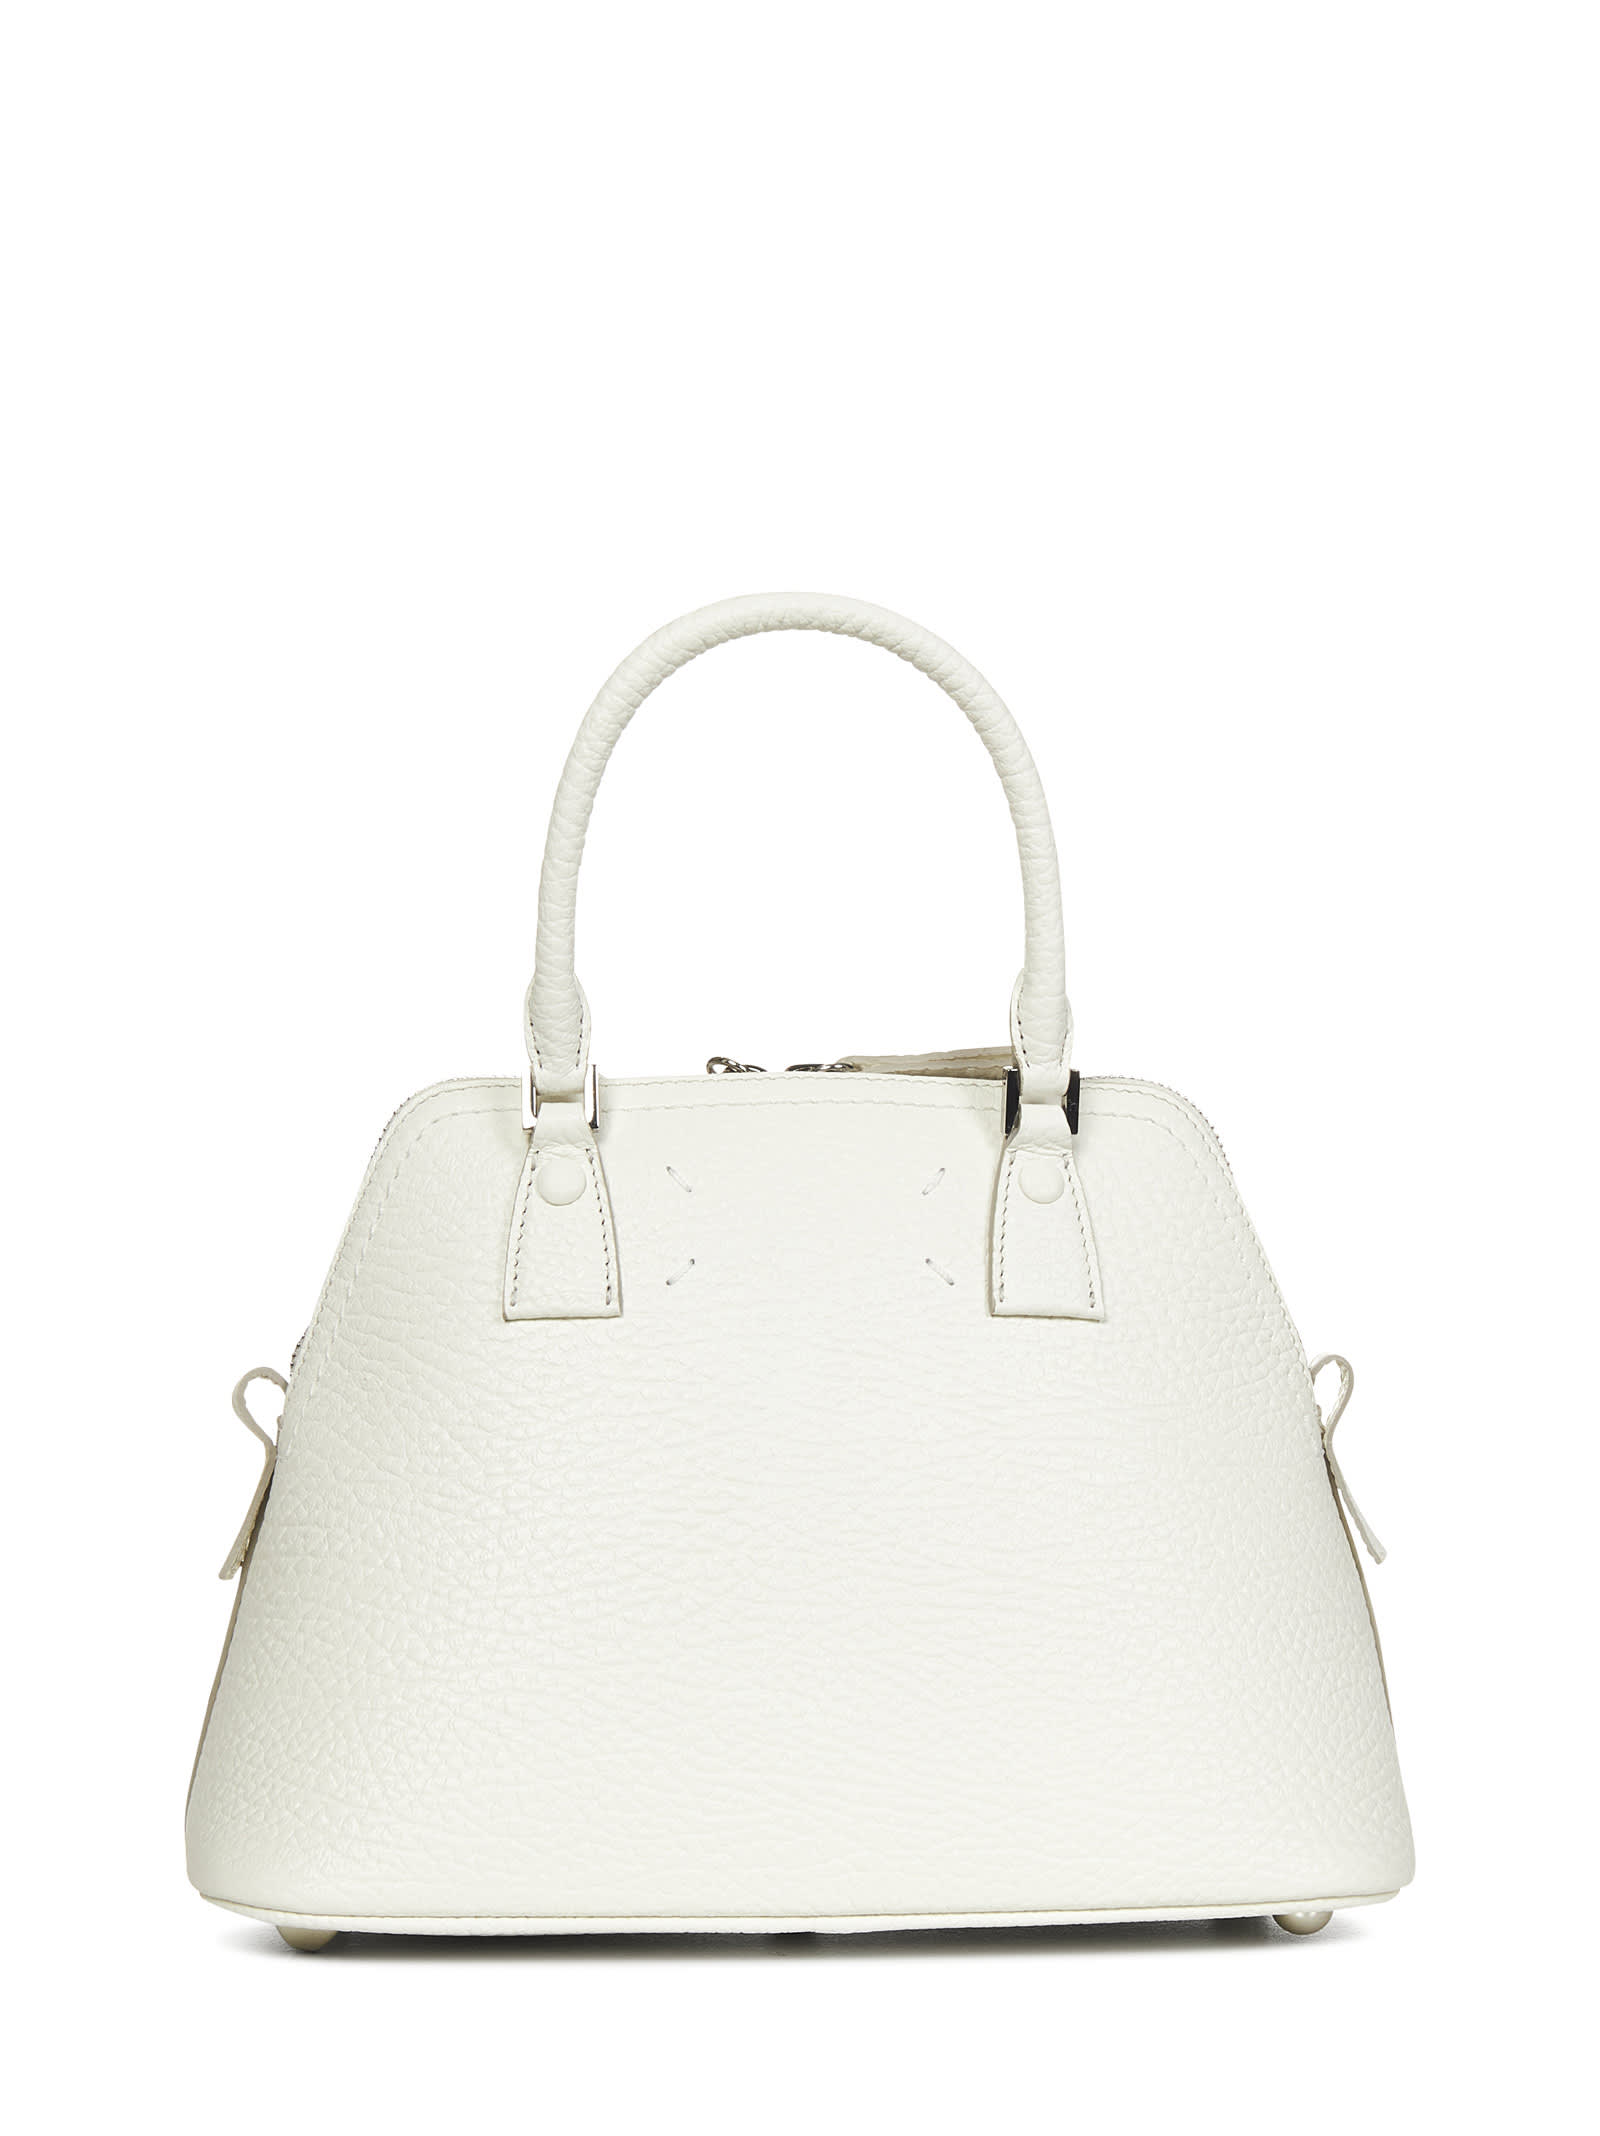 Shop Maison Margiela 5ac Classique Mini Shoulder Bag In White